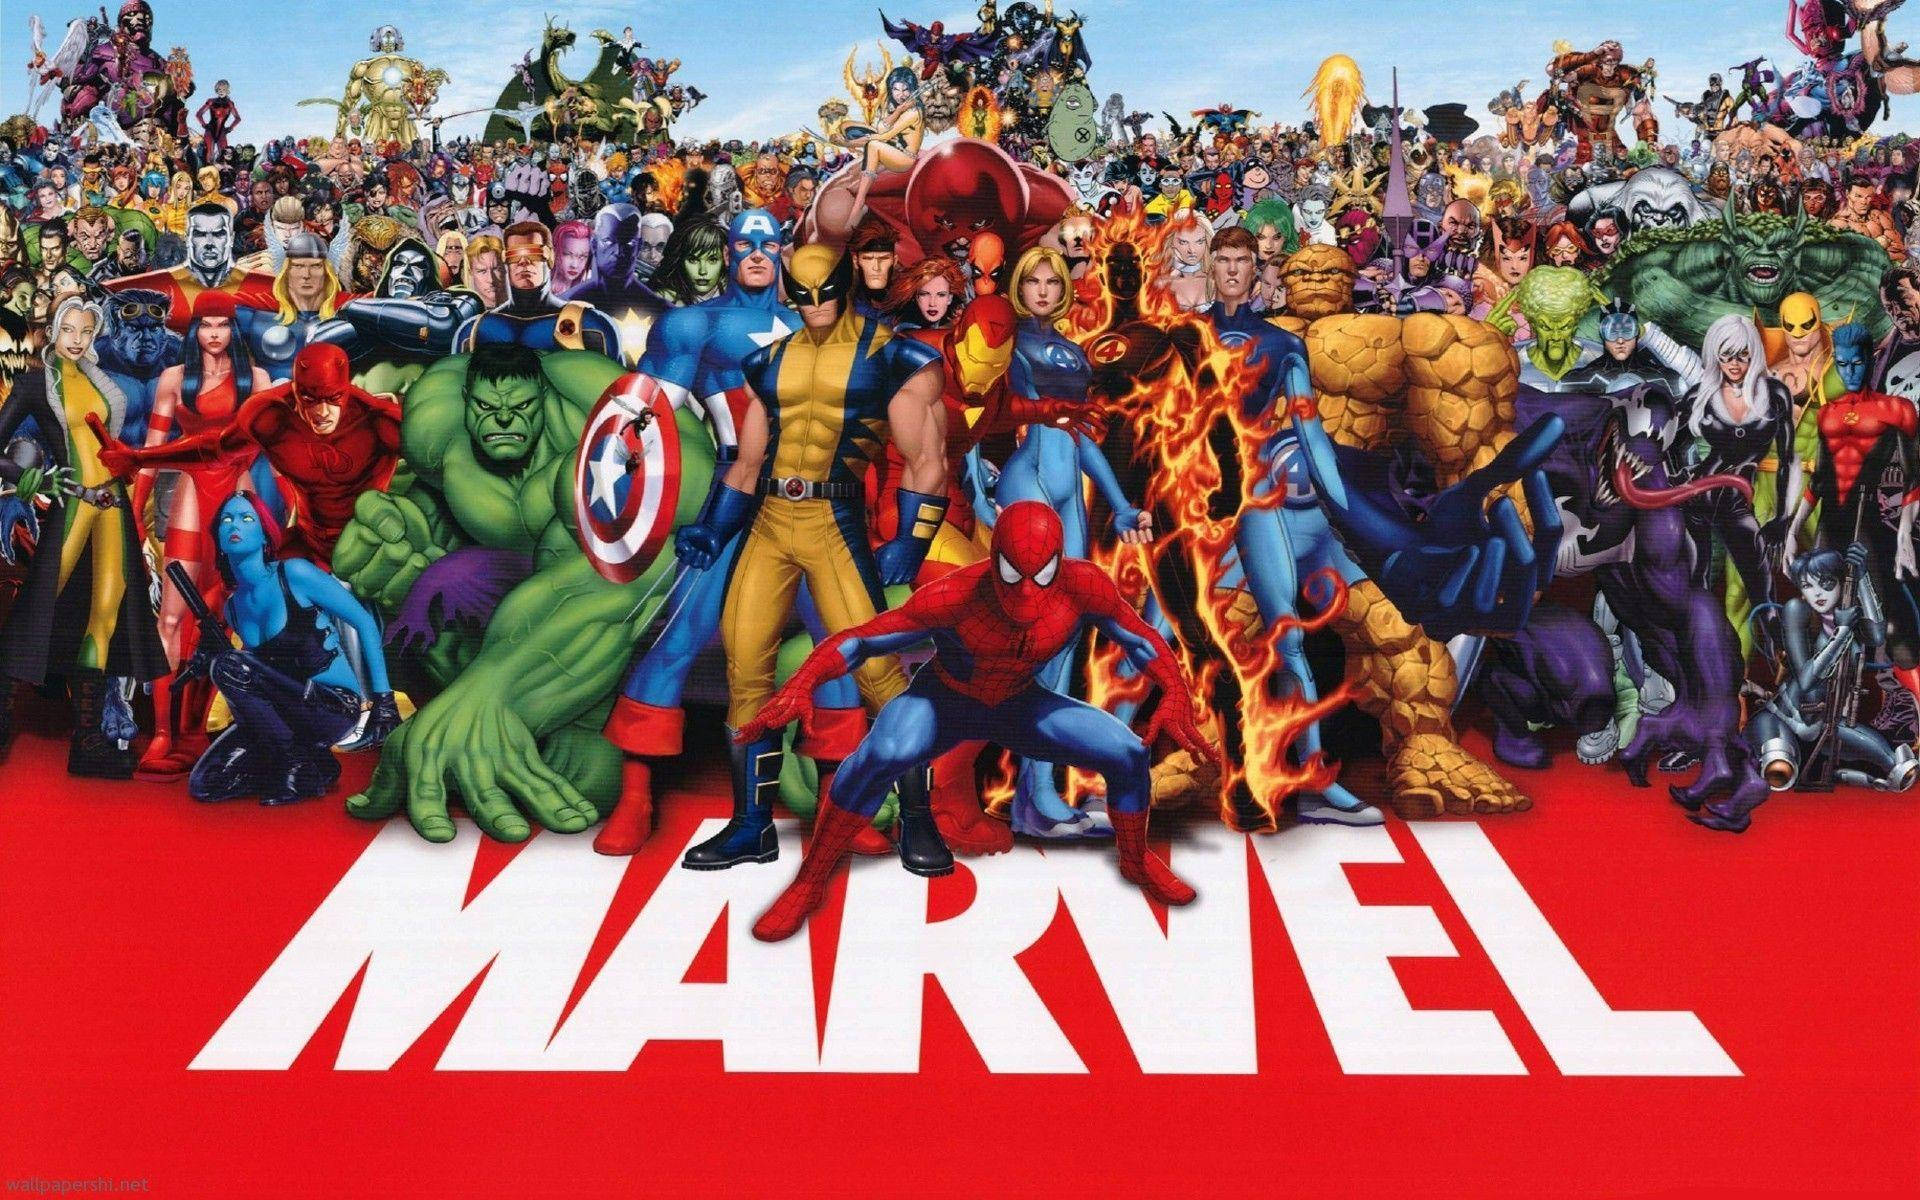 Stan Lee's Marvel Superheroes